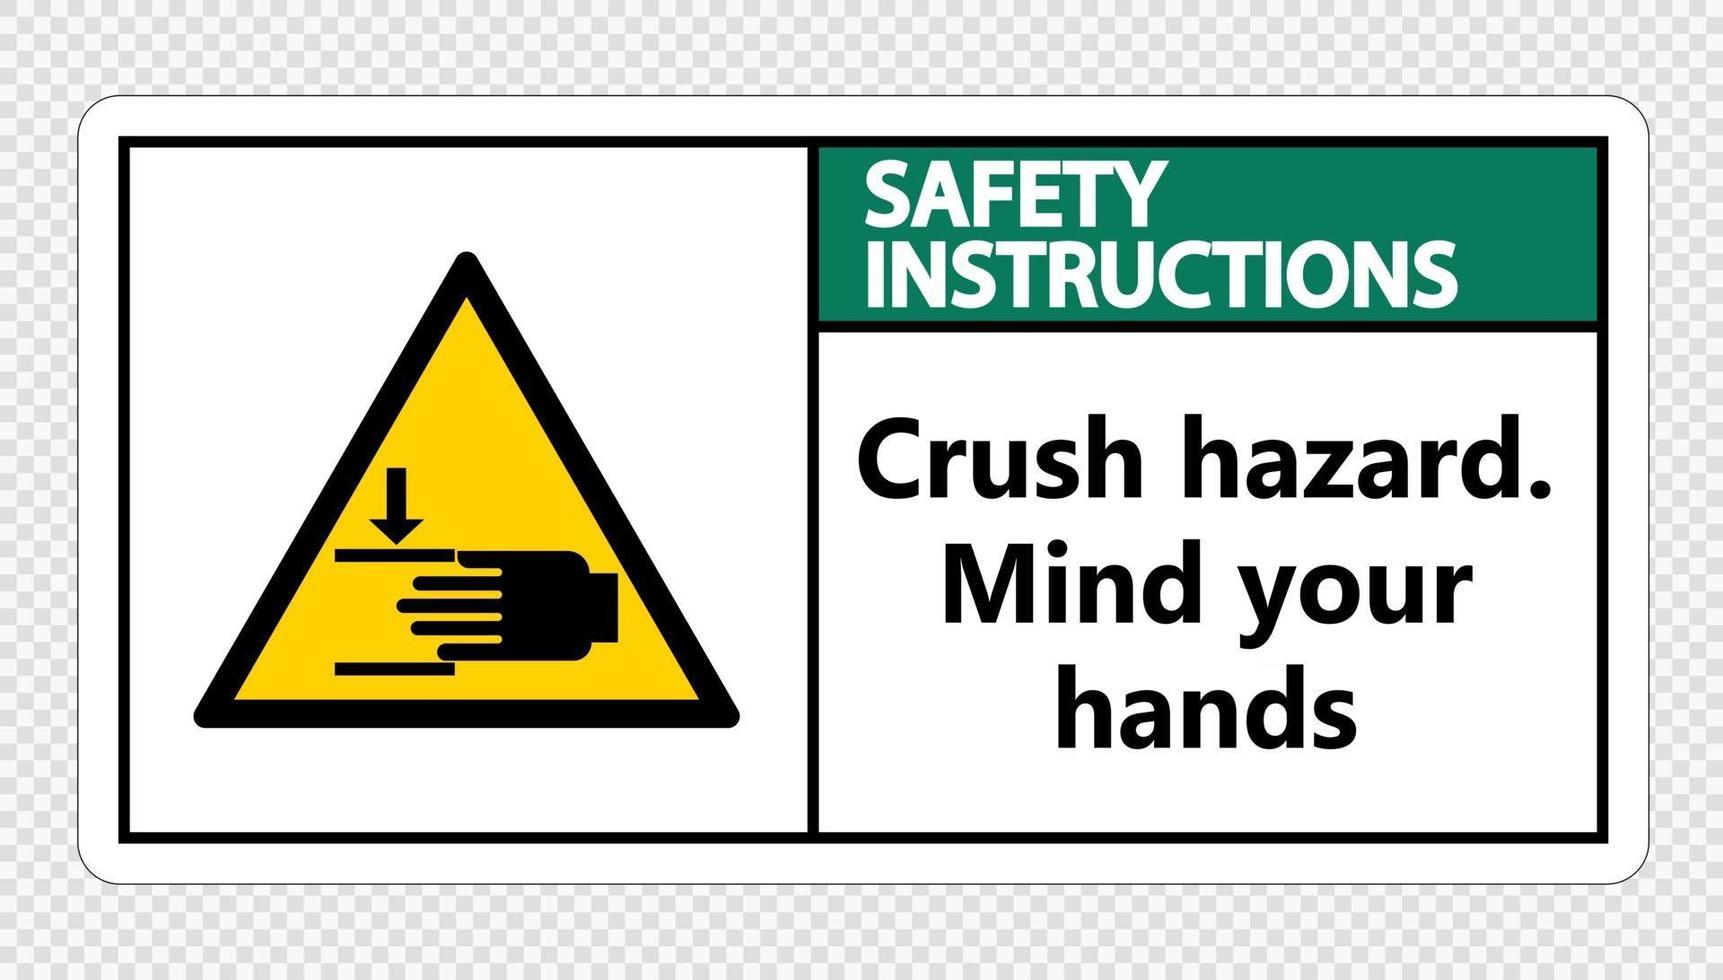 consignes de sécurité écraser le danger esprit vos mains signe sur fond transparent vecteur